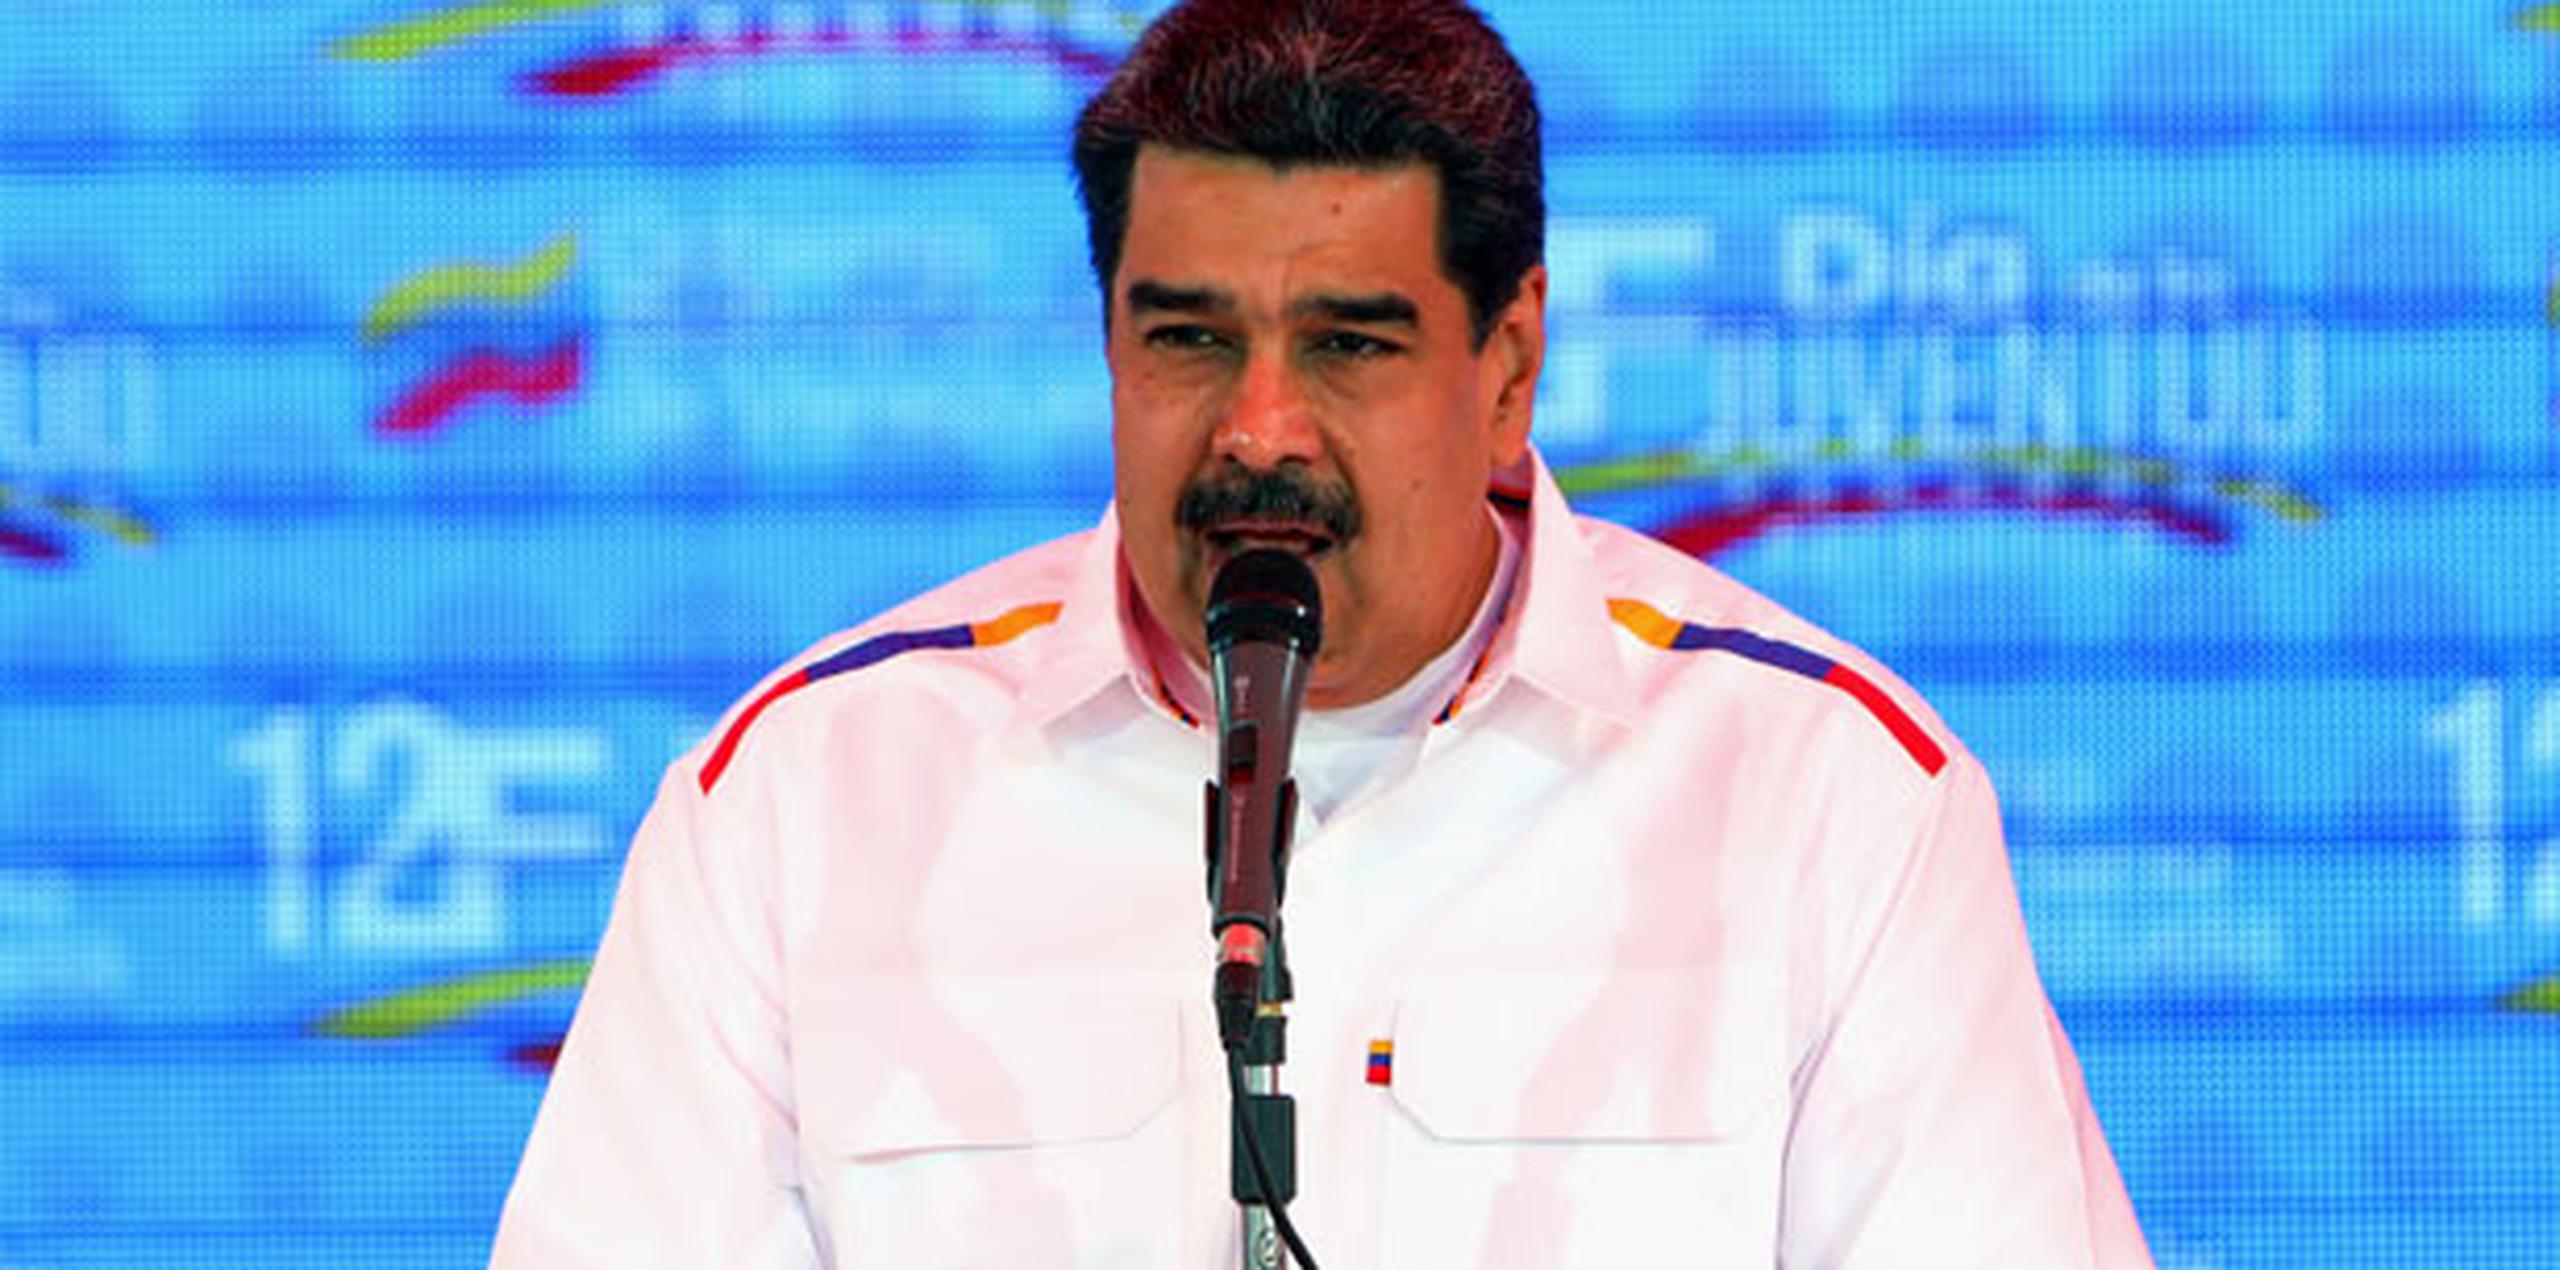 Hace casi dos años, el gobierno del presidente Donald Trump agregó a Maduro a su lista de sancionados, que ya incluye a más de 100 funcionarios venezolanos y allegados cuyos bienes en Estados Unidos fueron congelados. (Archivo)